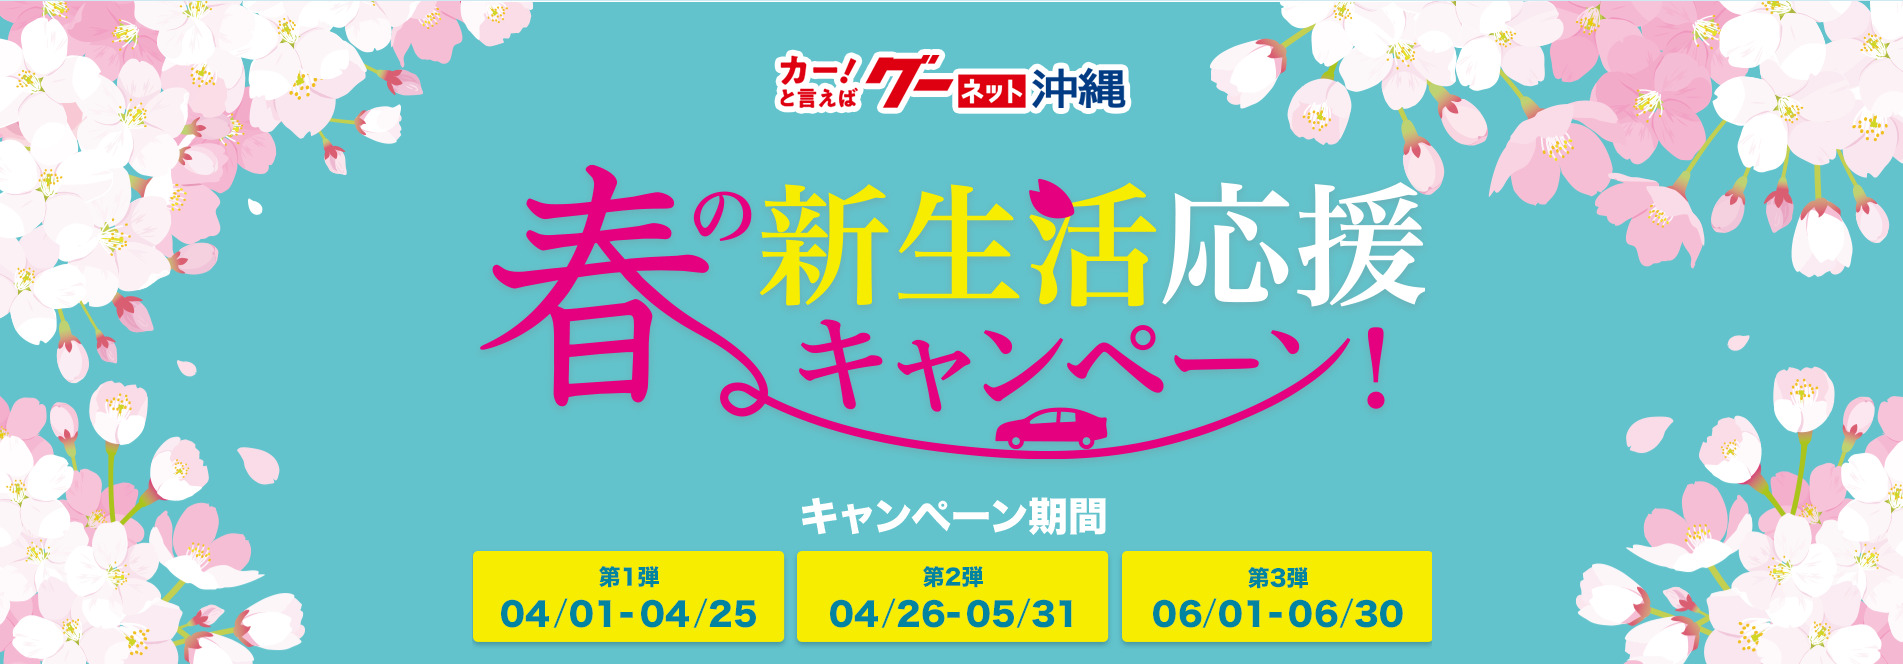 グーネット沖縄 春の新生活応援キャンペーン